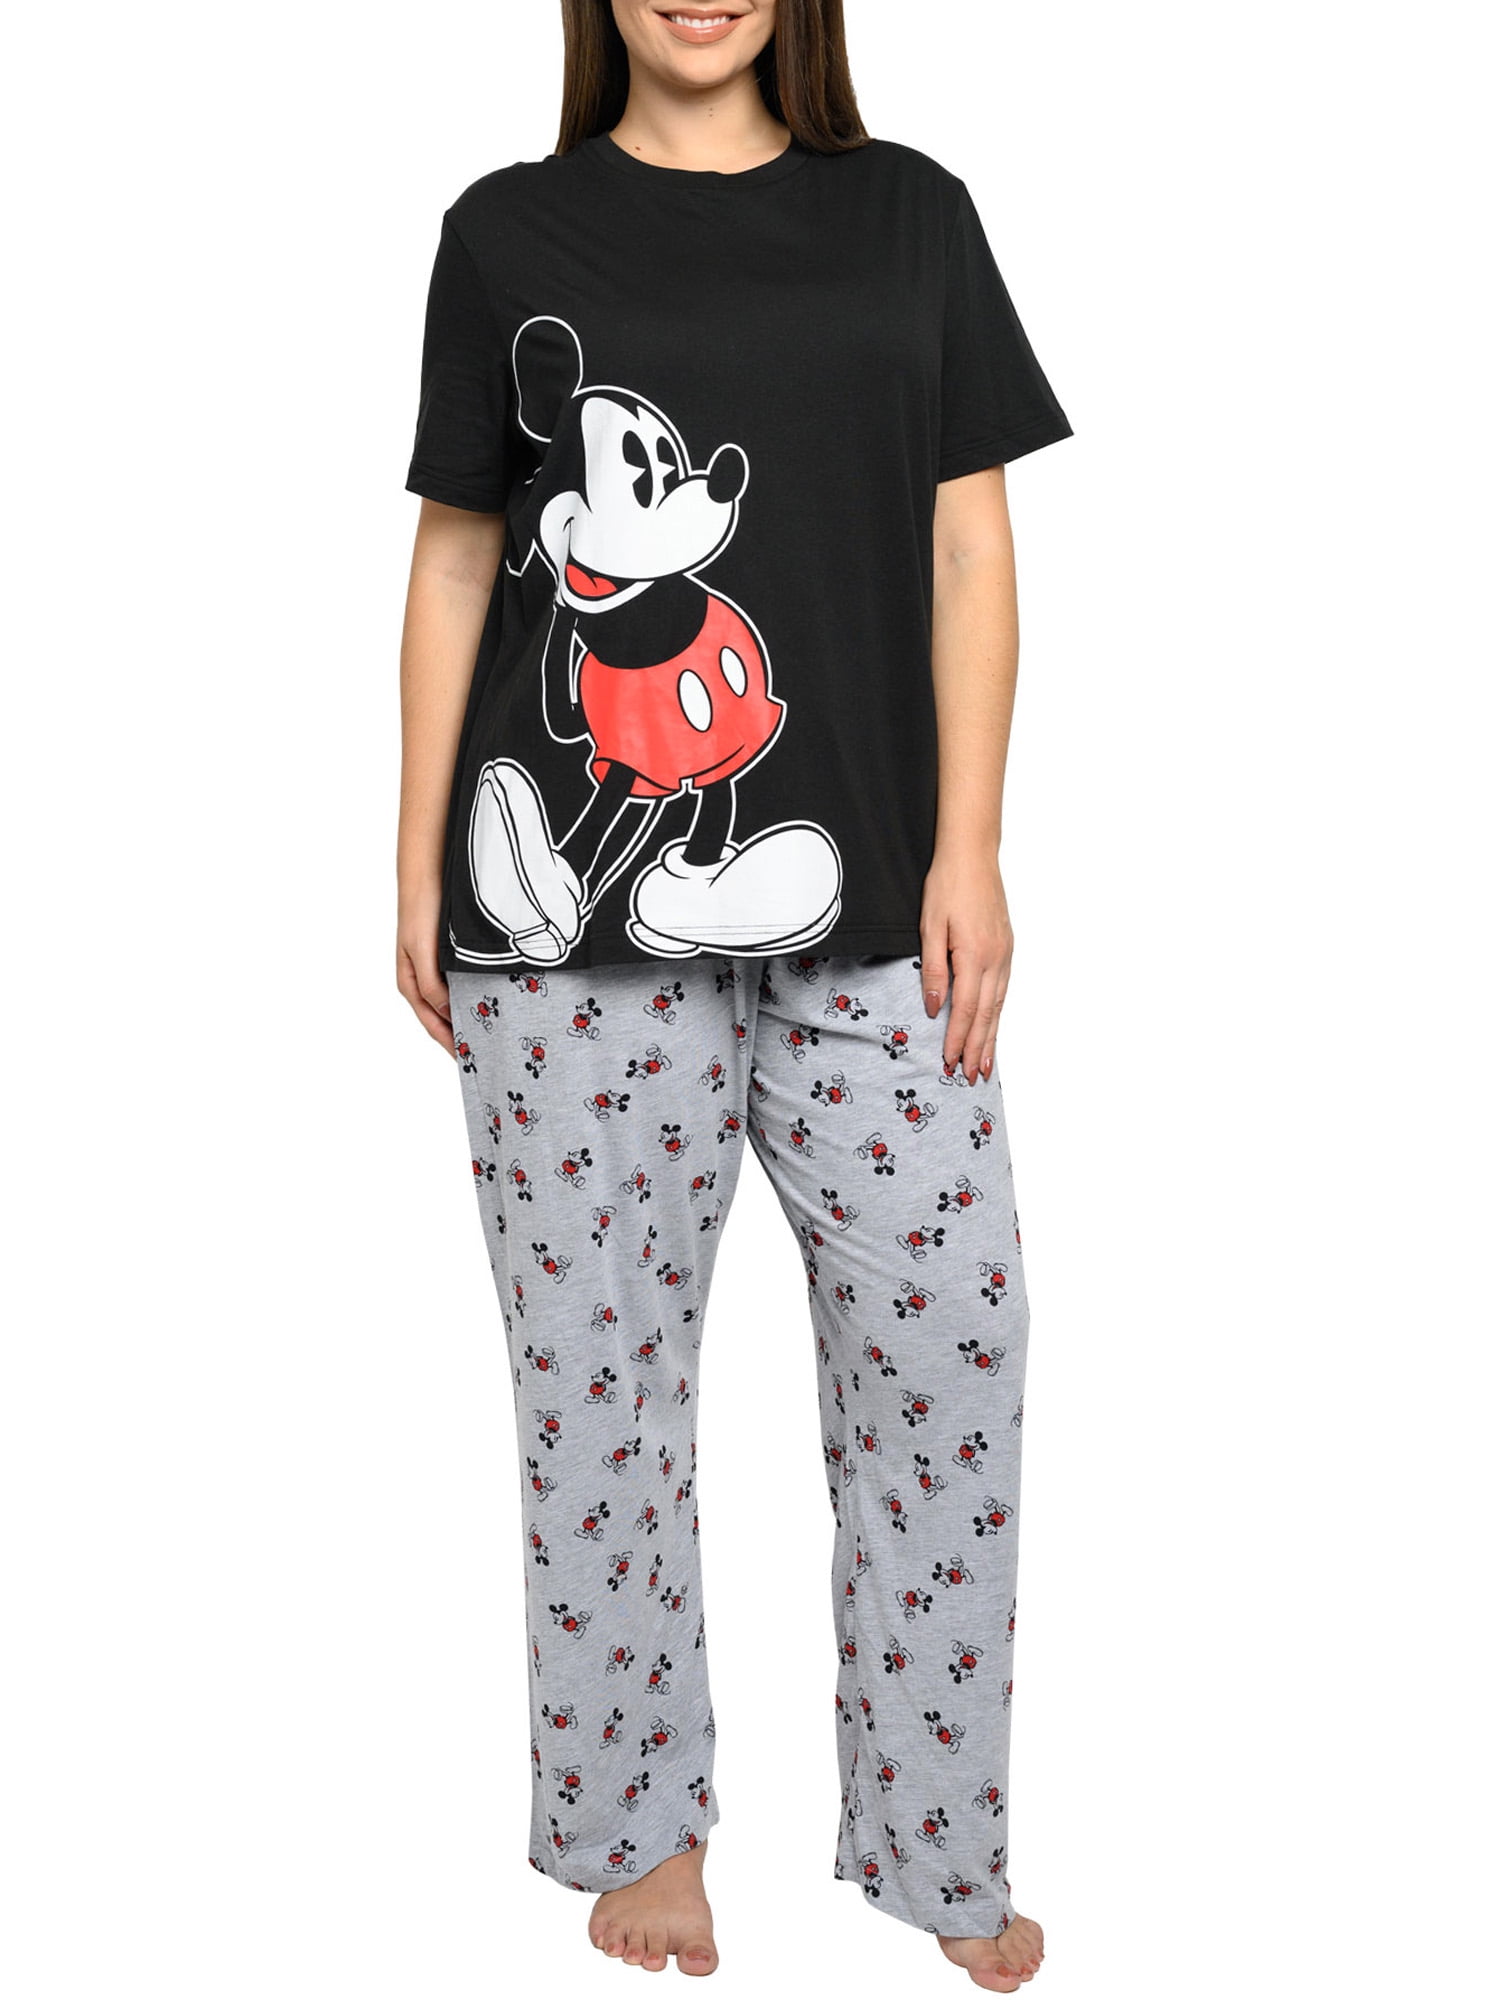 Pijama Mujer Mickey Mouse Disney Blusa + Pantalon 9294